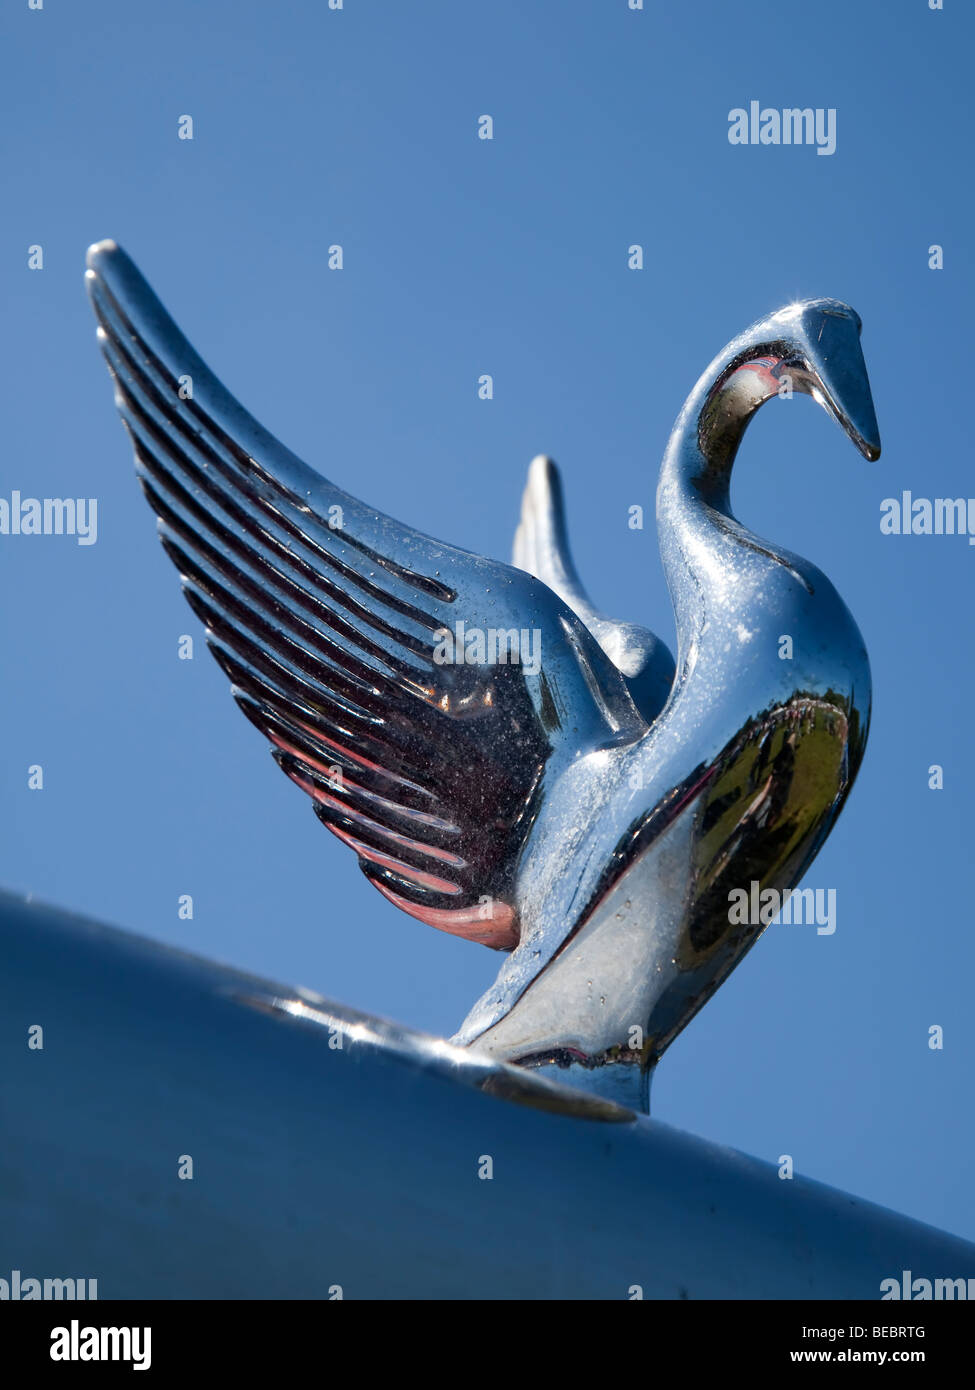 Peterbilt truck bird hood ornament Stock Photo